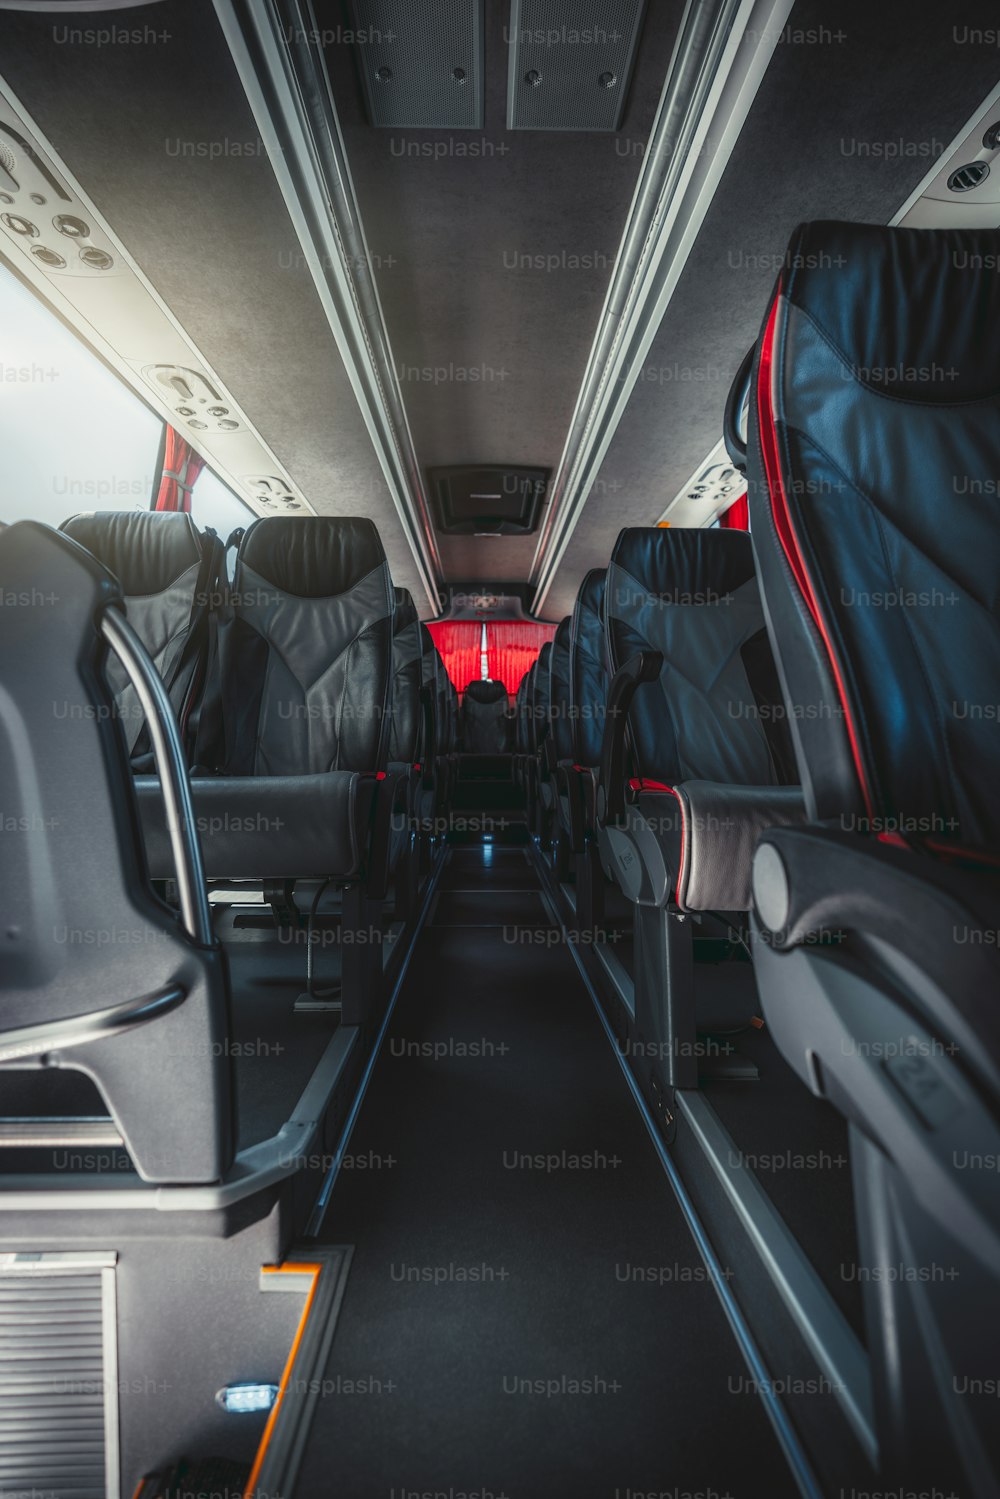 Una vista grandangolare verticale di un interno vuoto di un normale autobus interurbano con file di sedili numerati in pelle con bordi rossi, corridoio dei sedili in moquette al centro